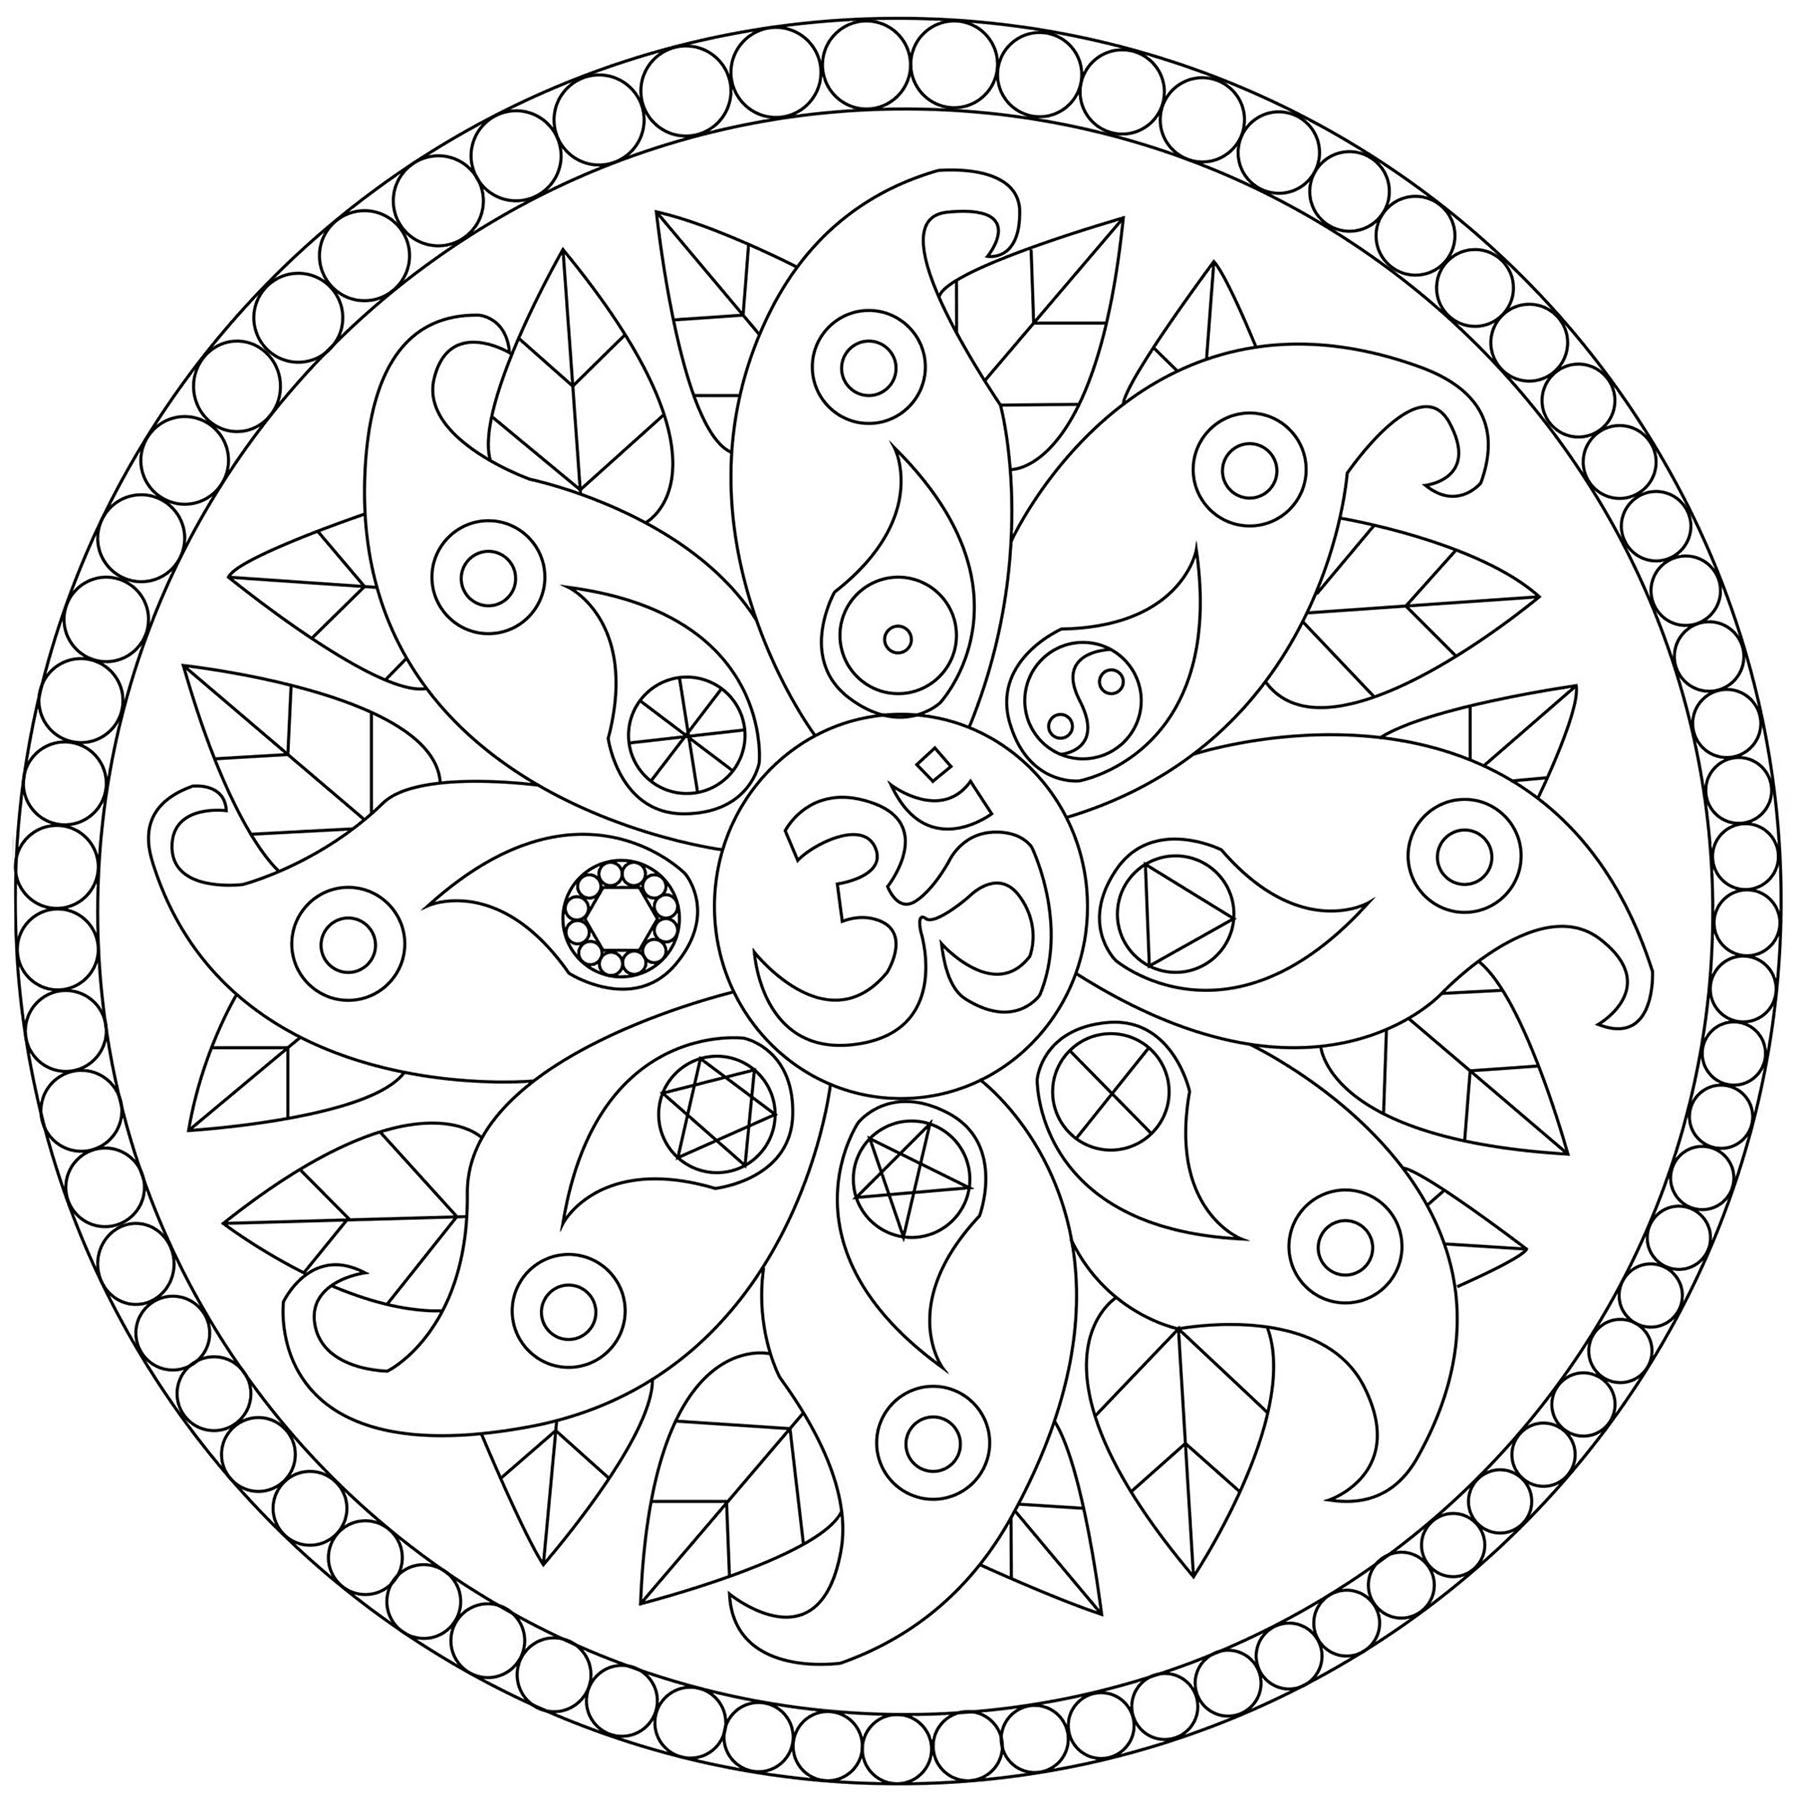 Mandala with various symbols Mandalas Kids Coloring Pages